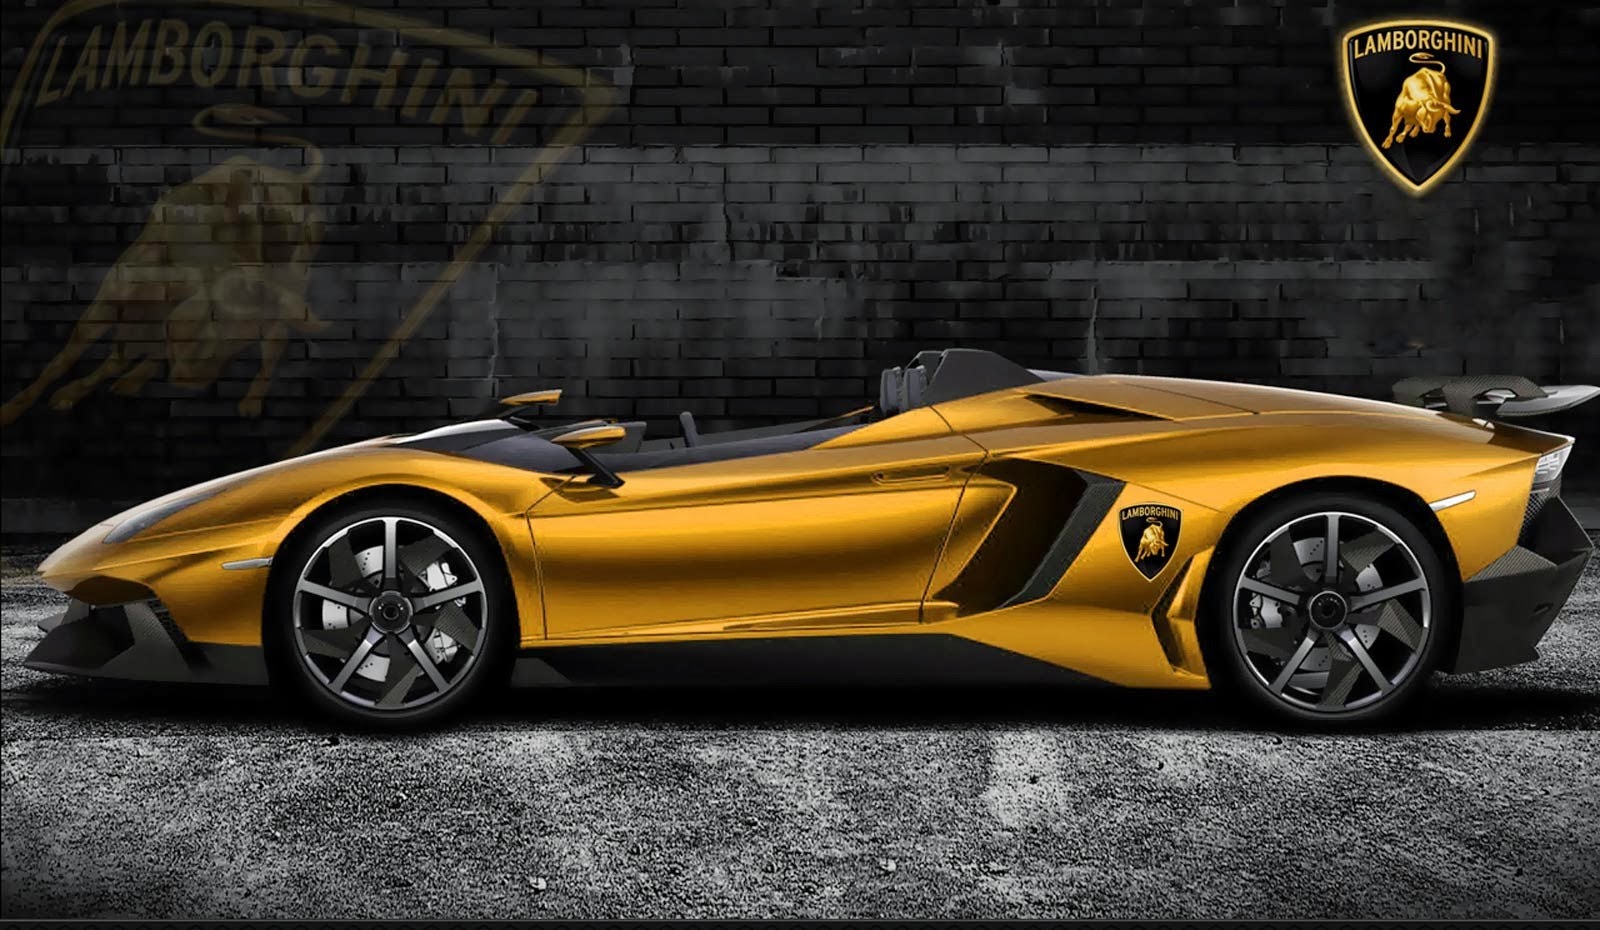 Gold Lamborghini Aventador Exterior Image Just Wele